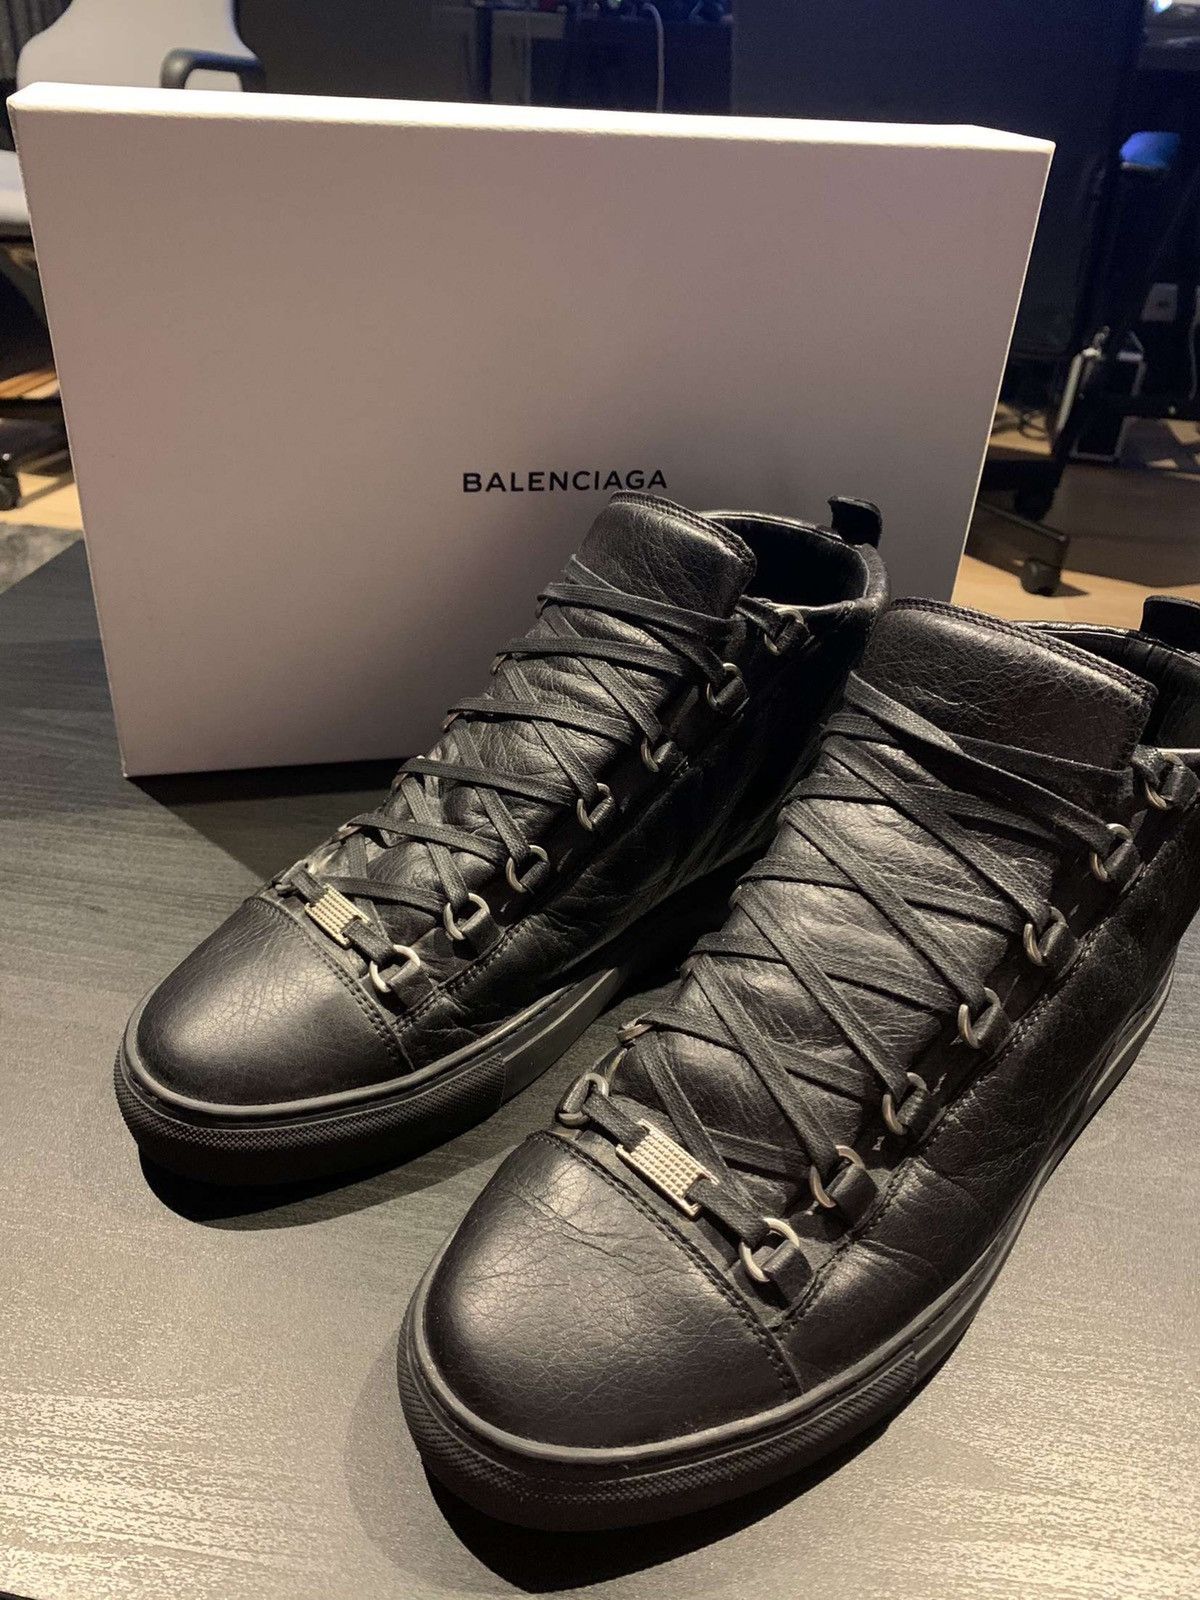 Balenciaga Balenciaga Arena High Black Leather Size US 10 / EU 43 - 1 Preview